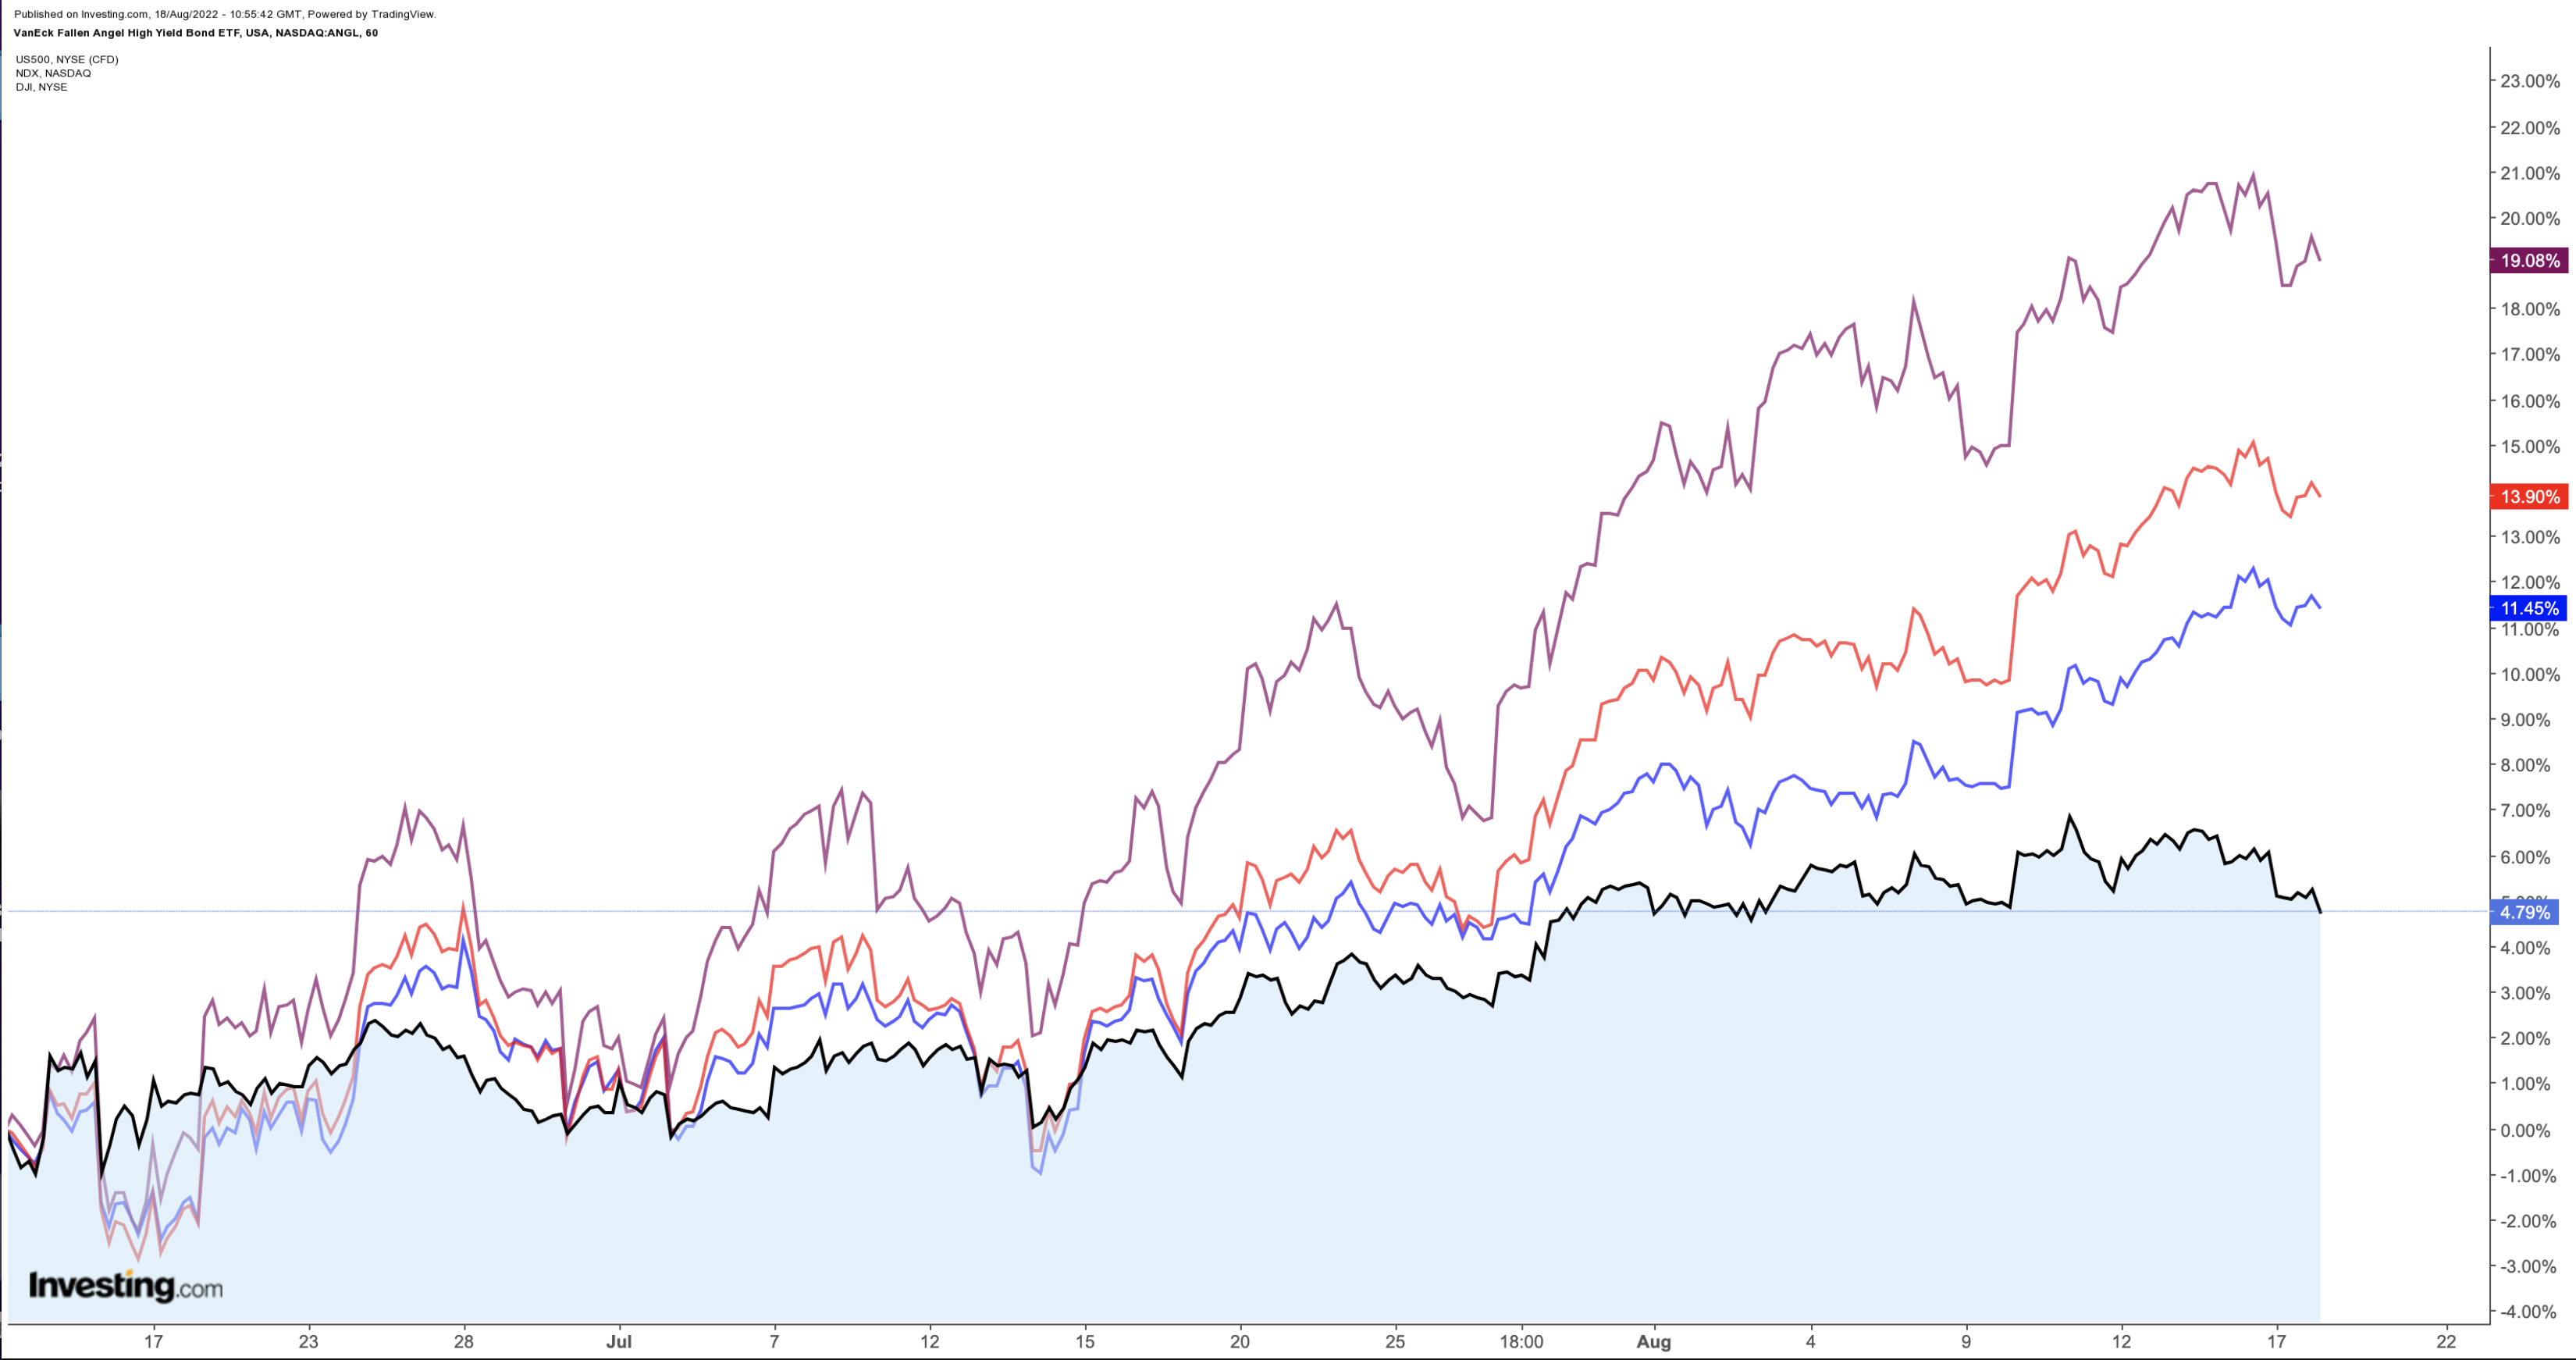 Performance-Übersicht zu Dow, S&P 500, Nasdaq und Fallen Angel ETF